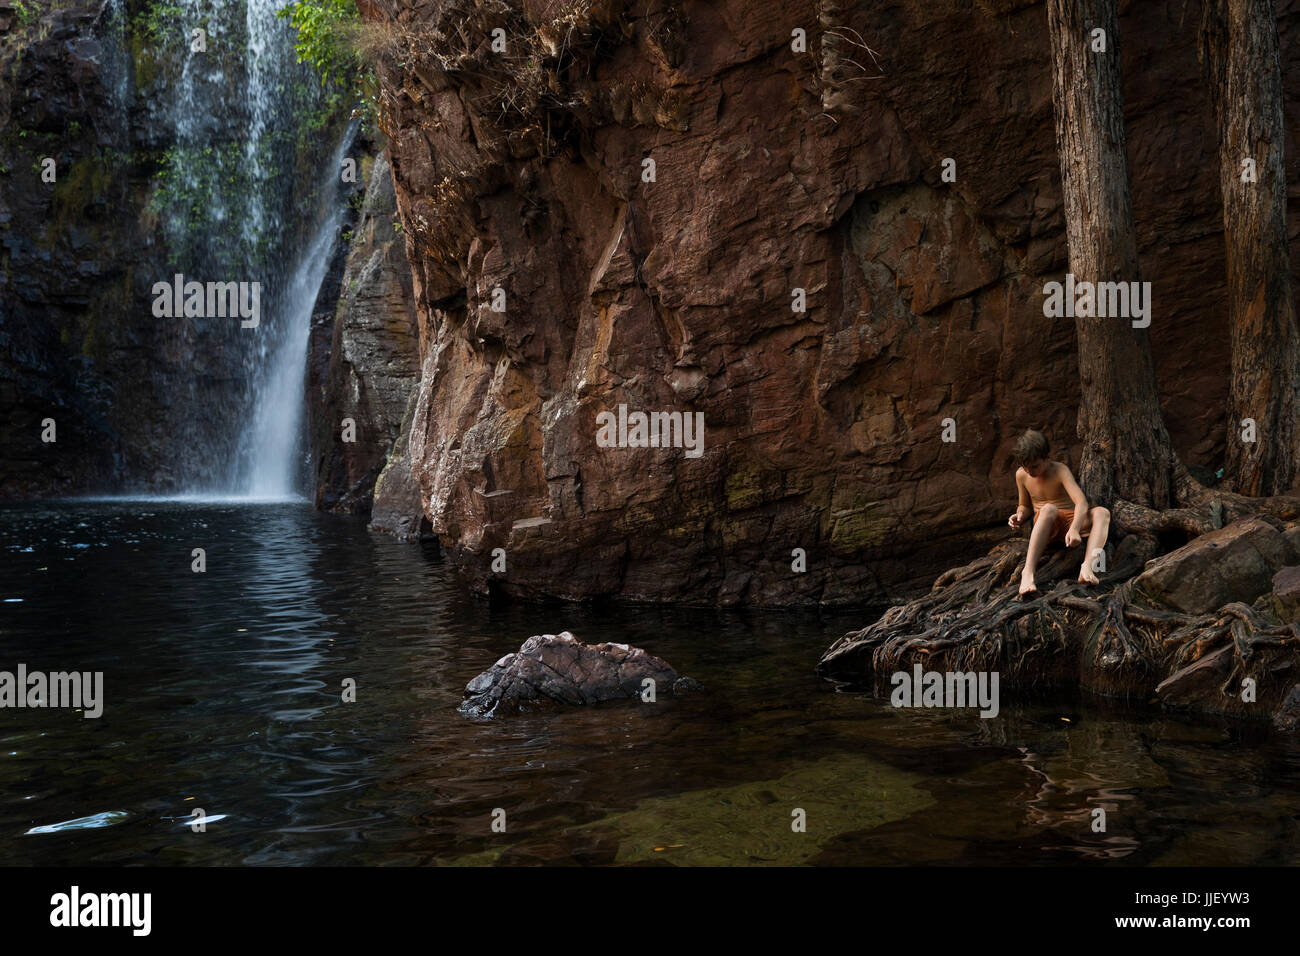 Garçon assis par une cascade, Australie occidentale, Australie Banque D'Images